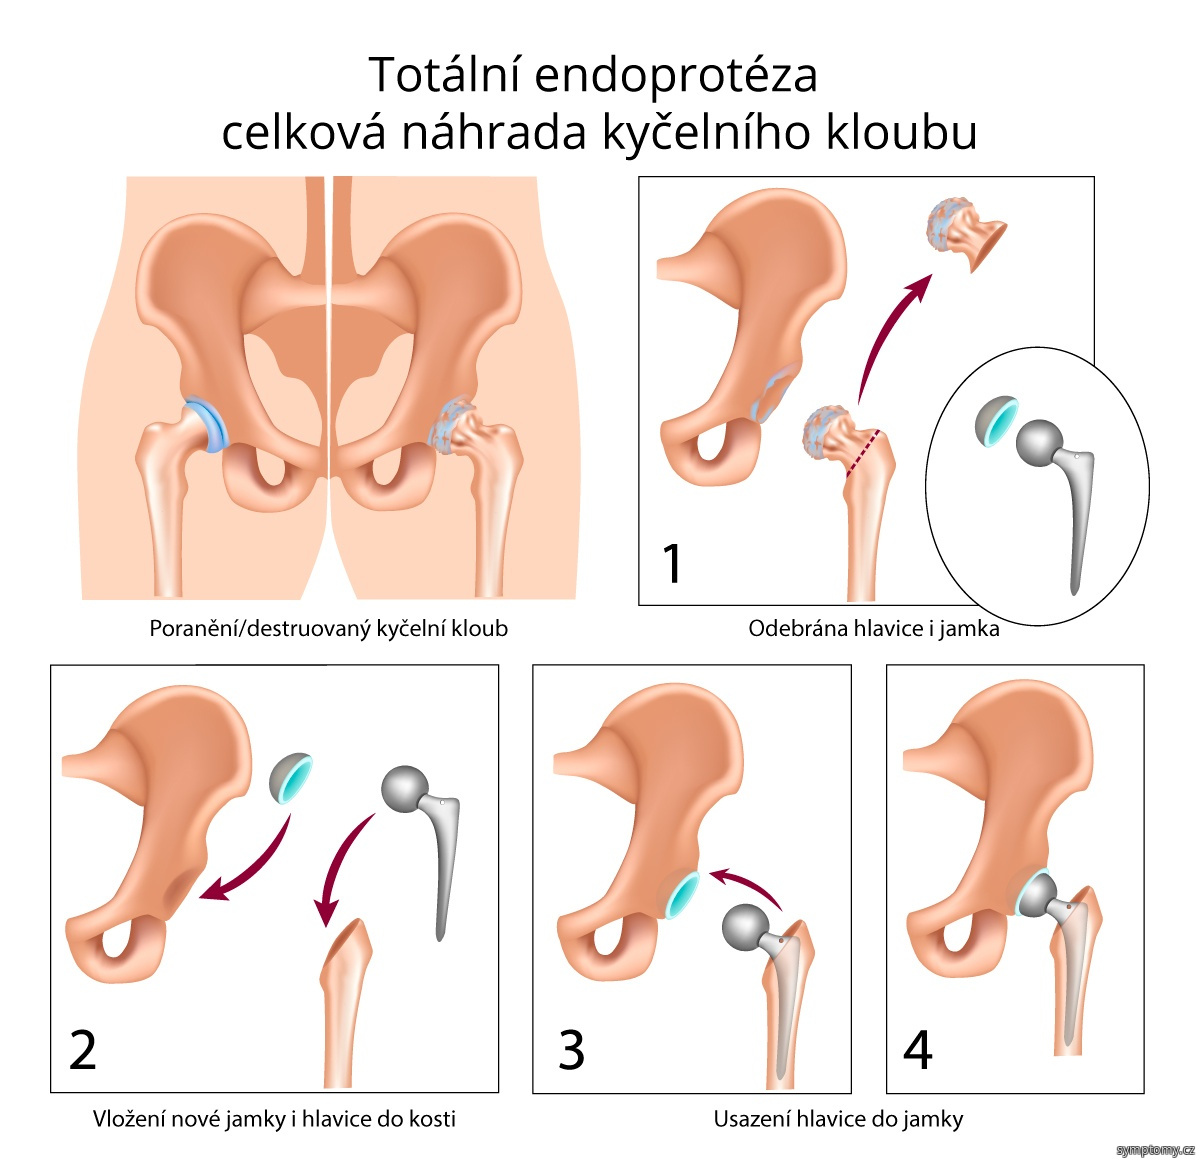 Totální endoprotéza – celková náhrada kyčelního kloubu